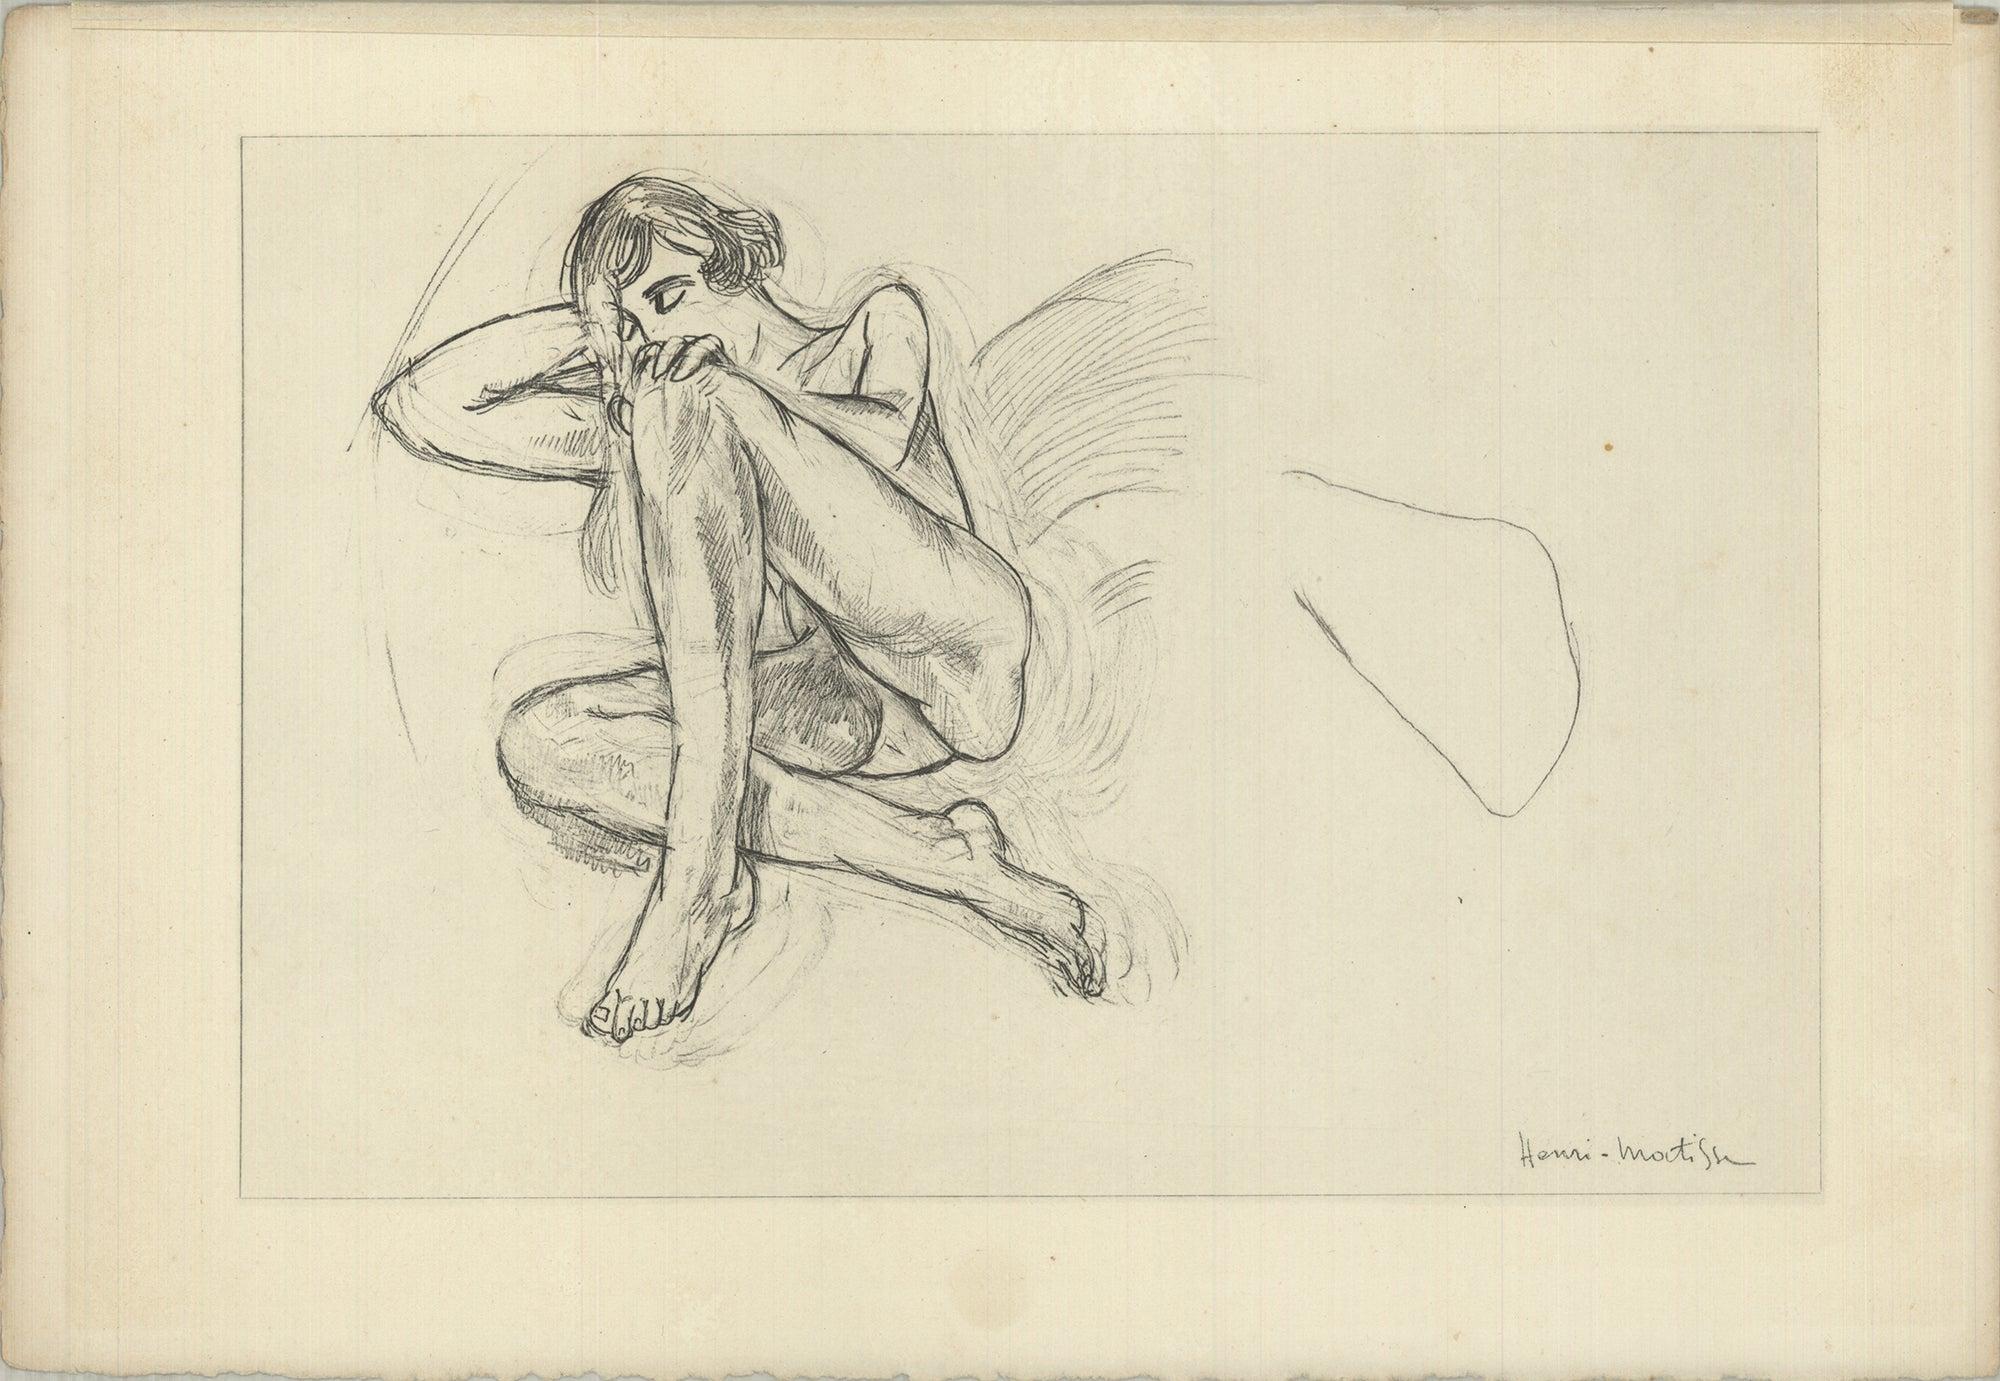 HENRI MATISSE Planche XXXVIII, 1920 - Print by Henri Matisse